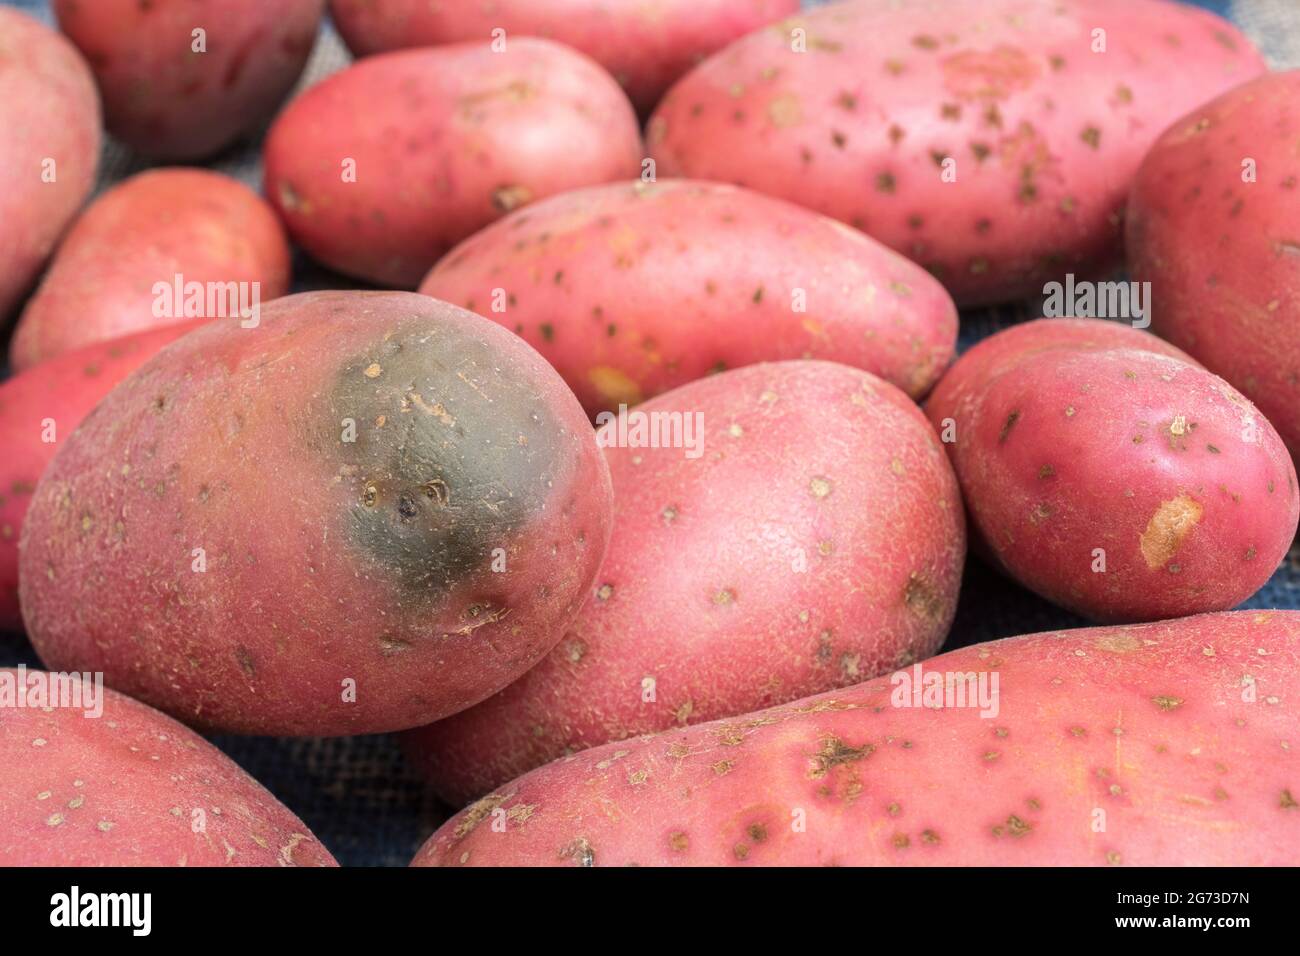 Pommes de terre rouges / rousslées cultivées au Royaume-Uni. Les pommes de terre ont une maladie présente, mais ici le problème est le « verdissement » d'une pomme de terre [voir notes]. Banque D'Images